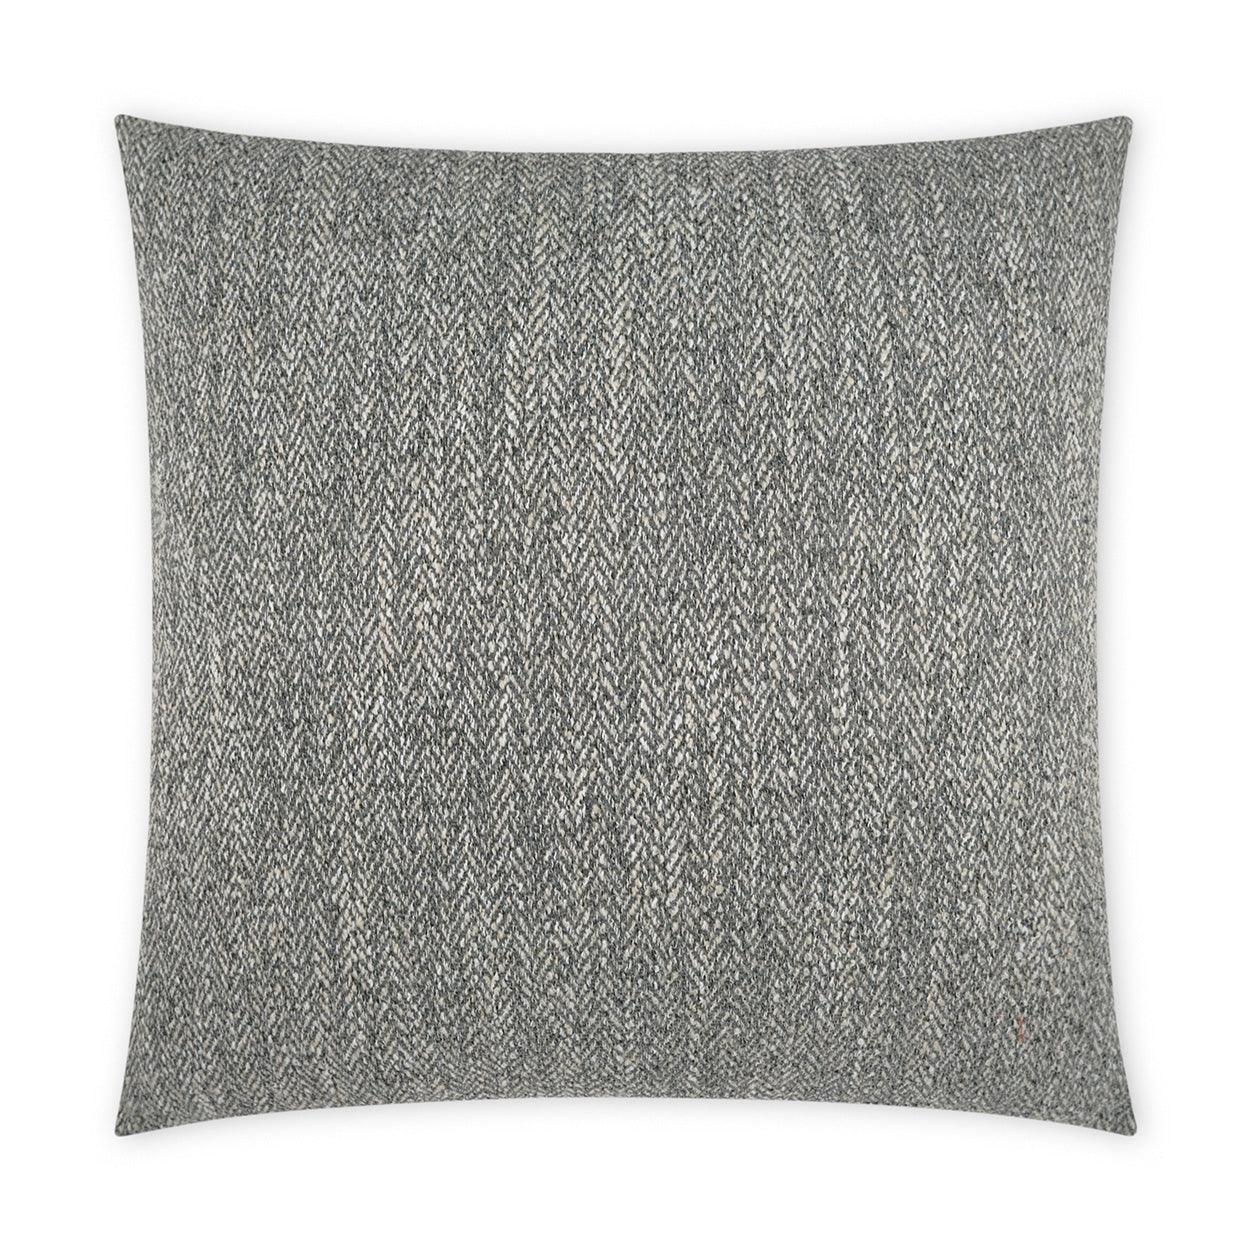 LOOMLAN Outdoor - Outdoor Stratford Pillow - Grey - Outdoor Pillows